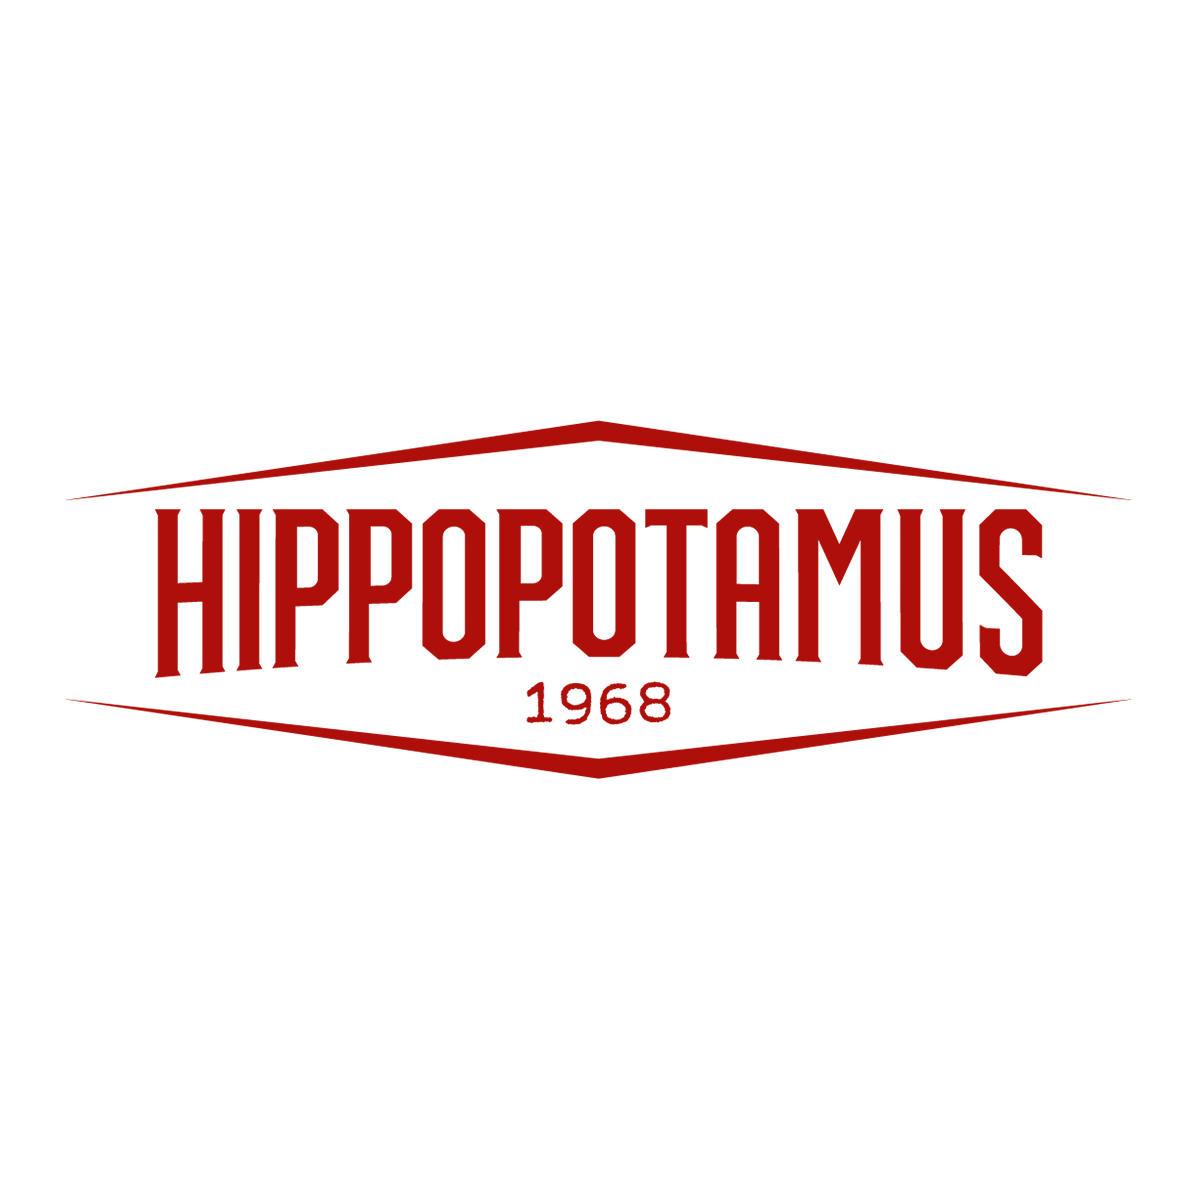 Hippopotamus Steakhouse Trappes